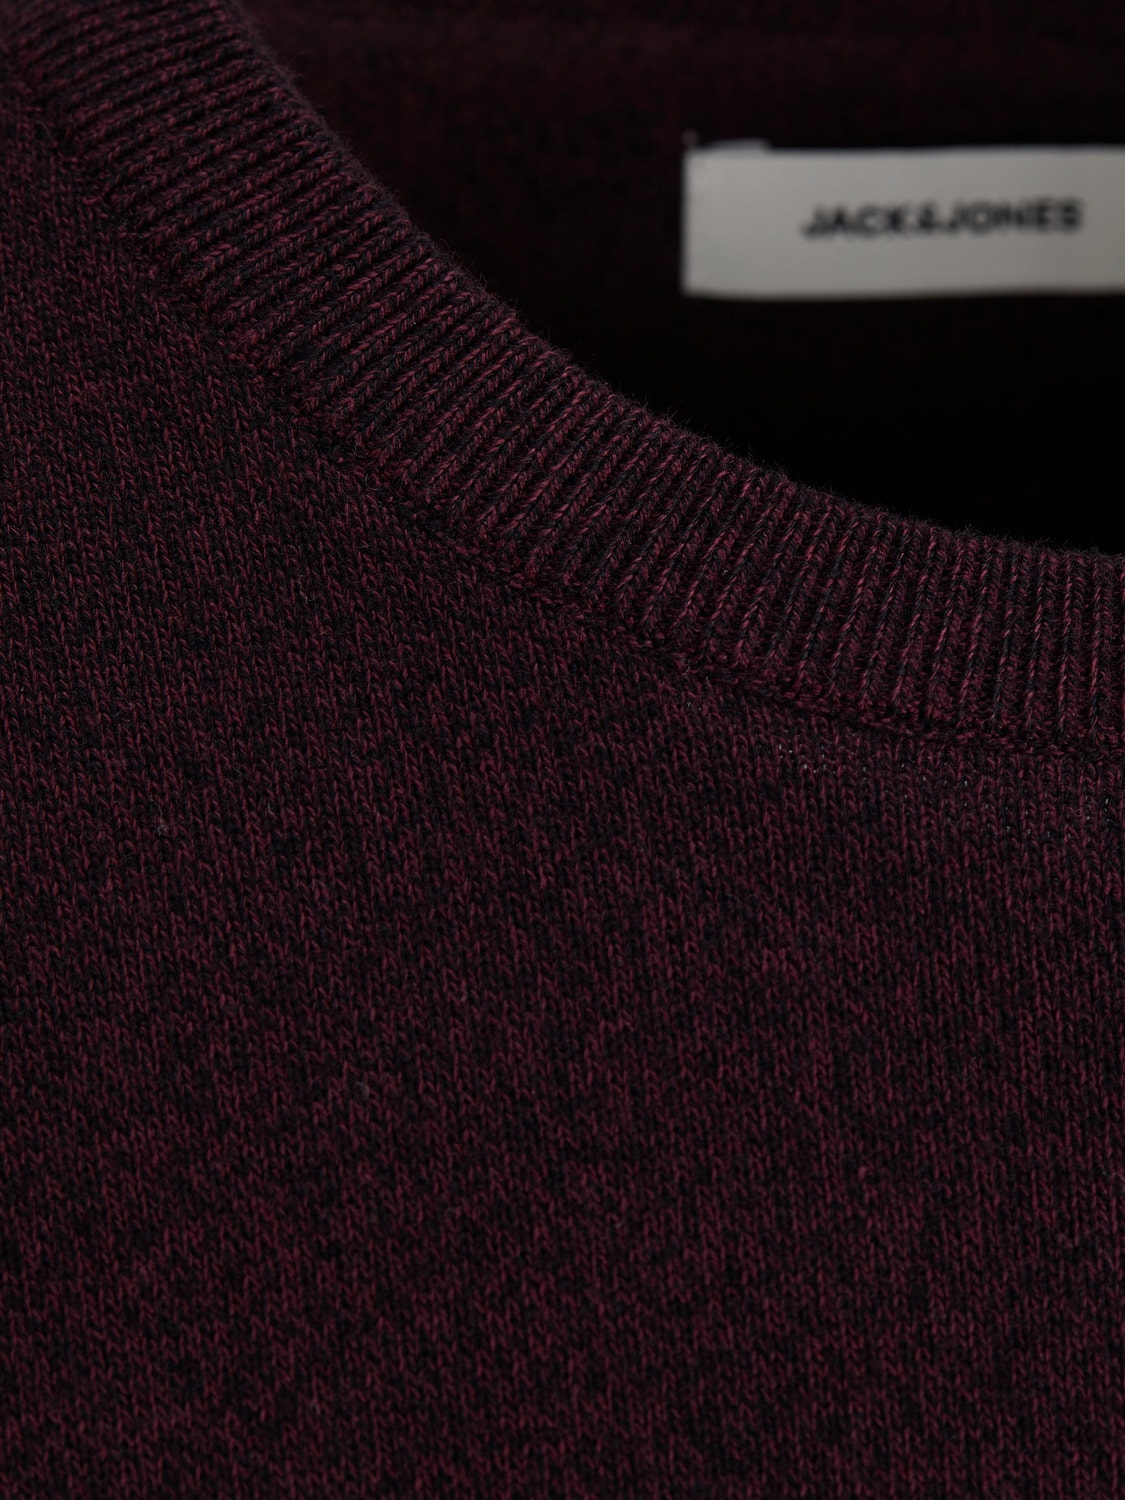 Jack & Jones Jersey con cuello redondo -Port Royale - 12137190